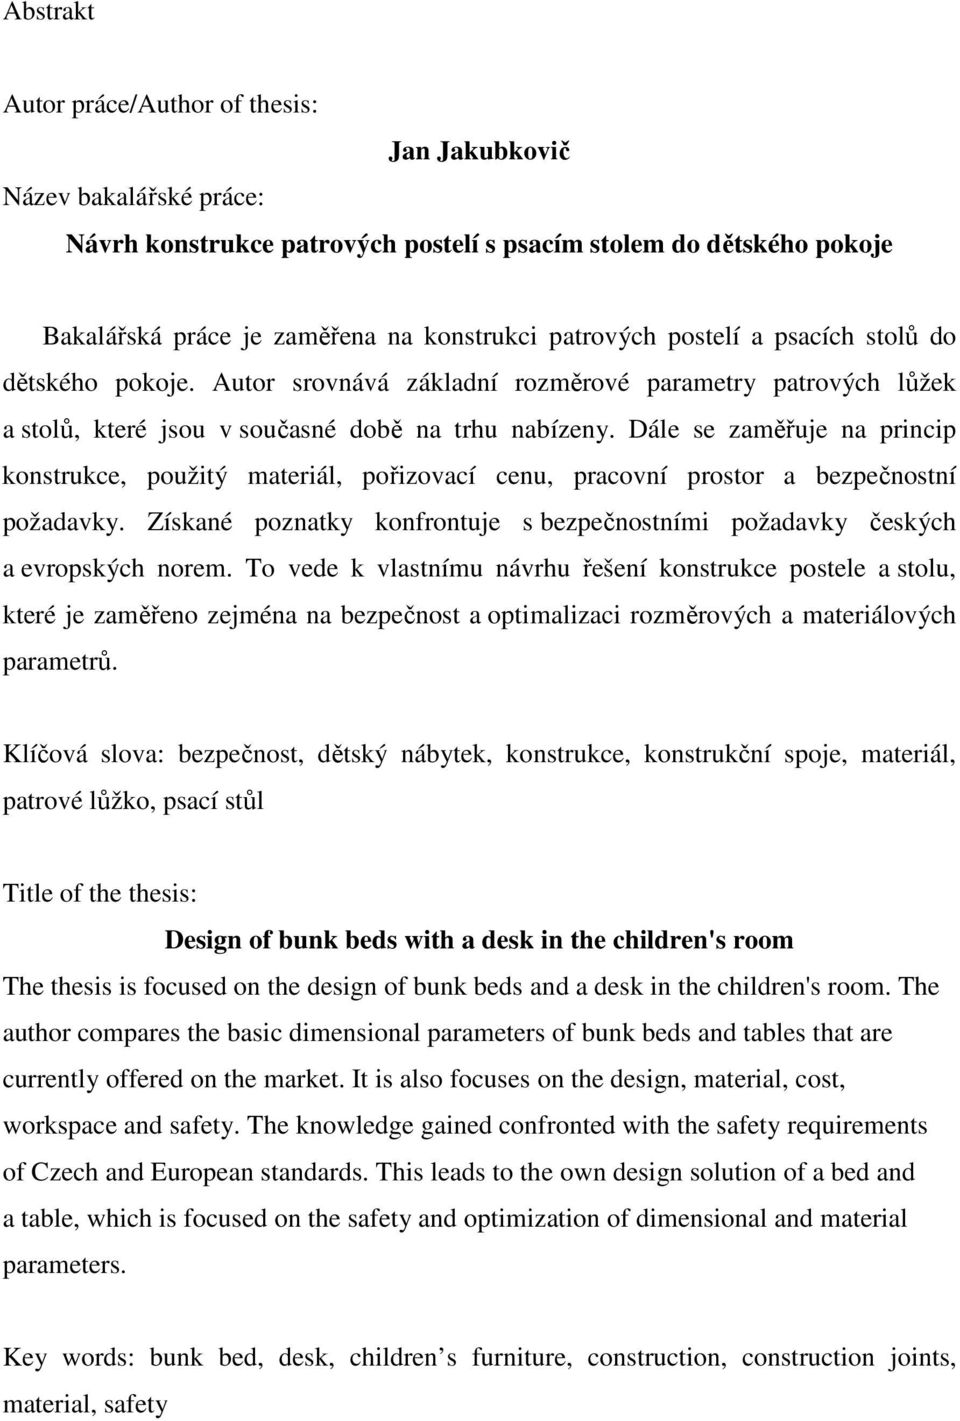 Návrh konstrukce patrových postelí s psacím stolem do dětského pokoje - PDF  Stažení zdarma